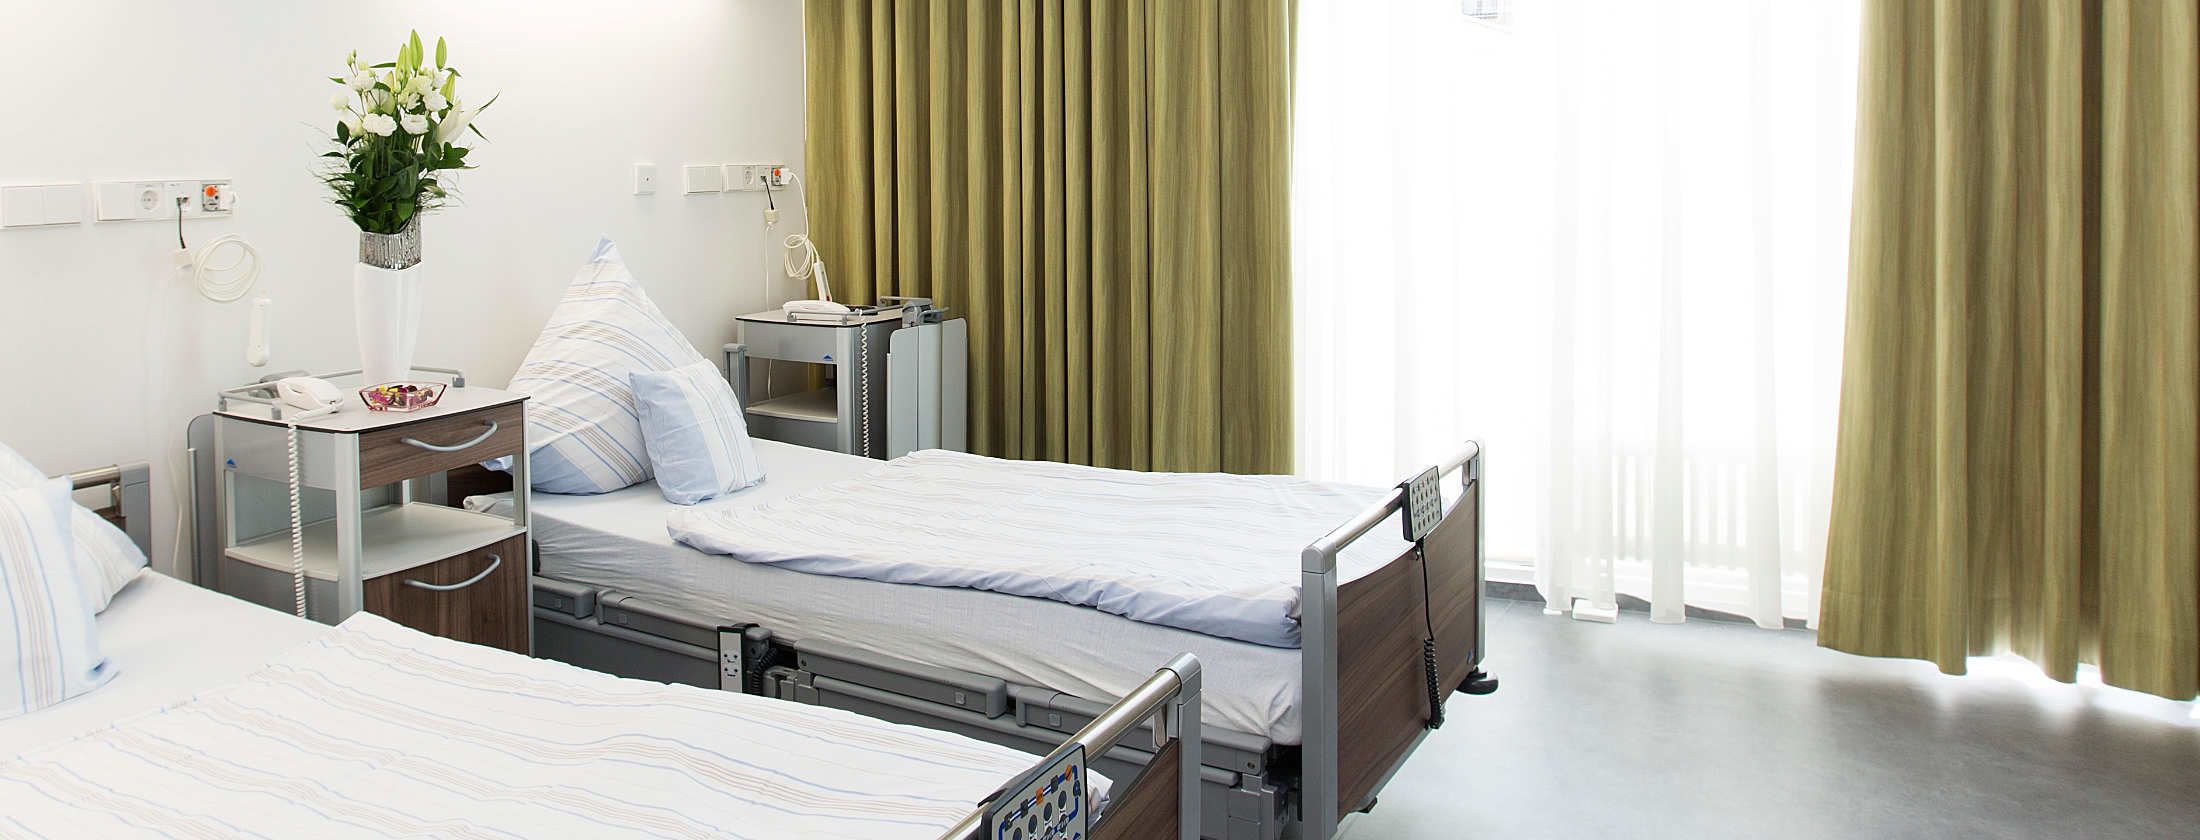 Patientenzimmer der Berger Klink in Frankfurt am Main für stationäre PatientInnen. Die Zimmer sind im sterilen Weiß gehalten. Die Gardinen im Goldton. Weiche Betten, Flachbildschirm und modernste Kommunikationsmittel bieten Komfort und Erholung nach OP.